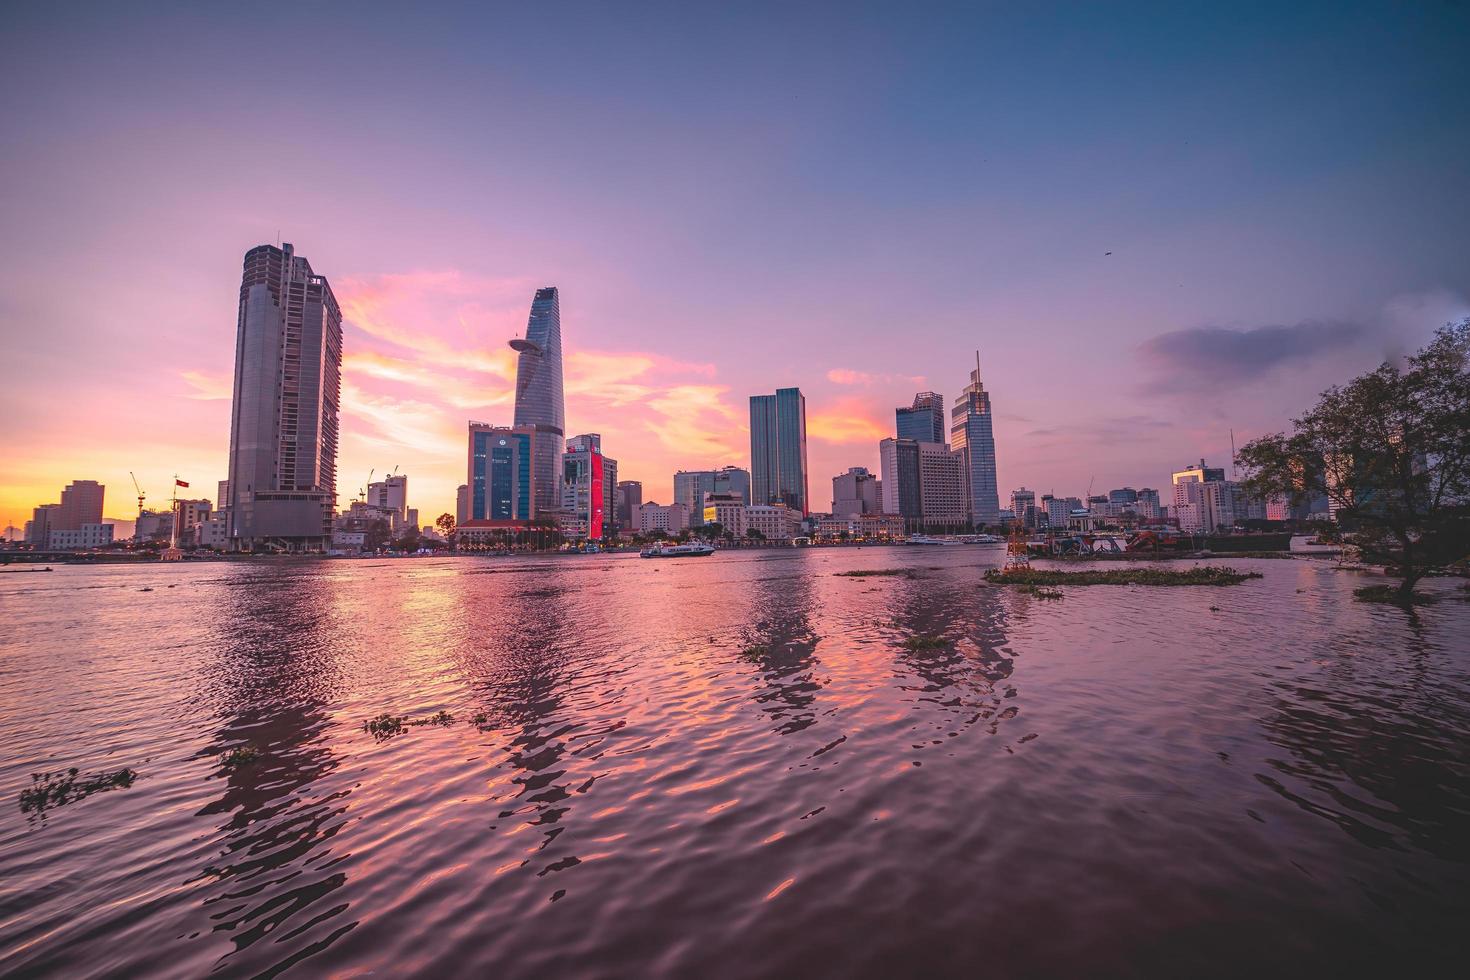 ho chi minh, vietnam - 13 feb 2022 utsikt över bitexcos finansiella tornbyggnad, byggnader, vägar, thu thiem-bron och saigonfloden i ho chi minh-staden i solnedgången. panoramabild av hög kvalitet. foto